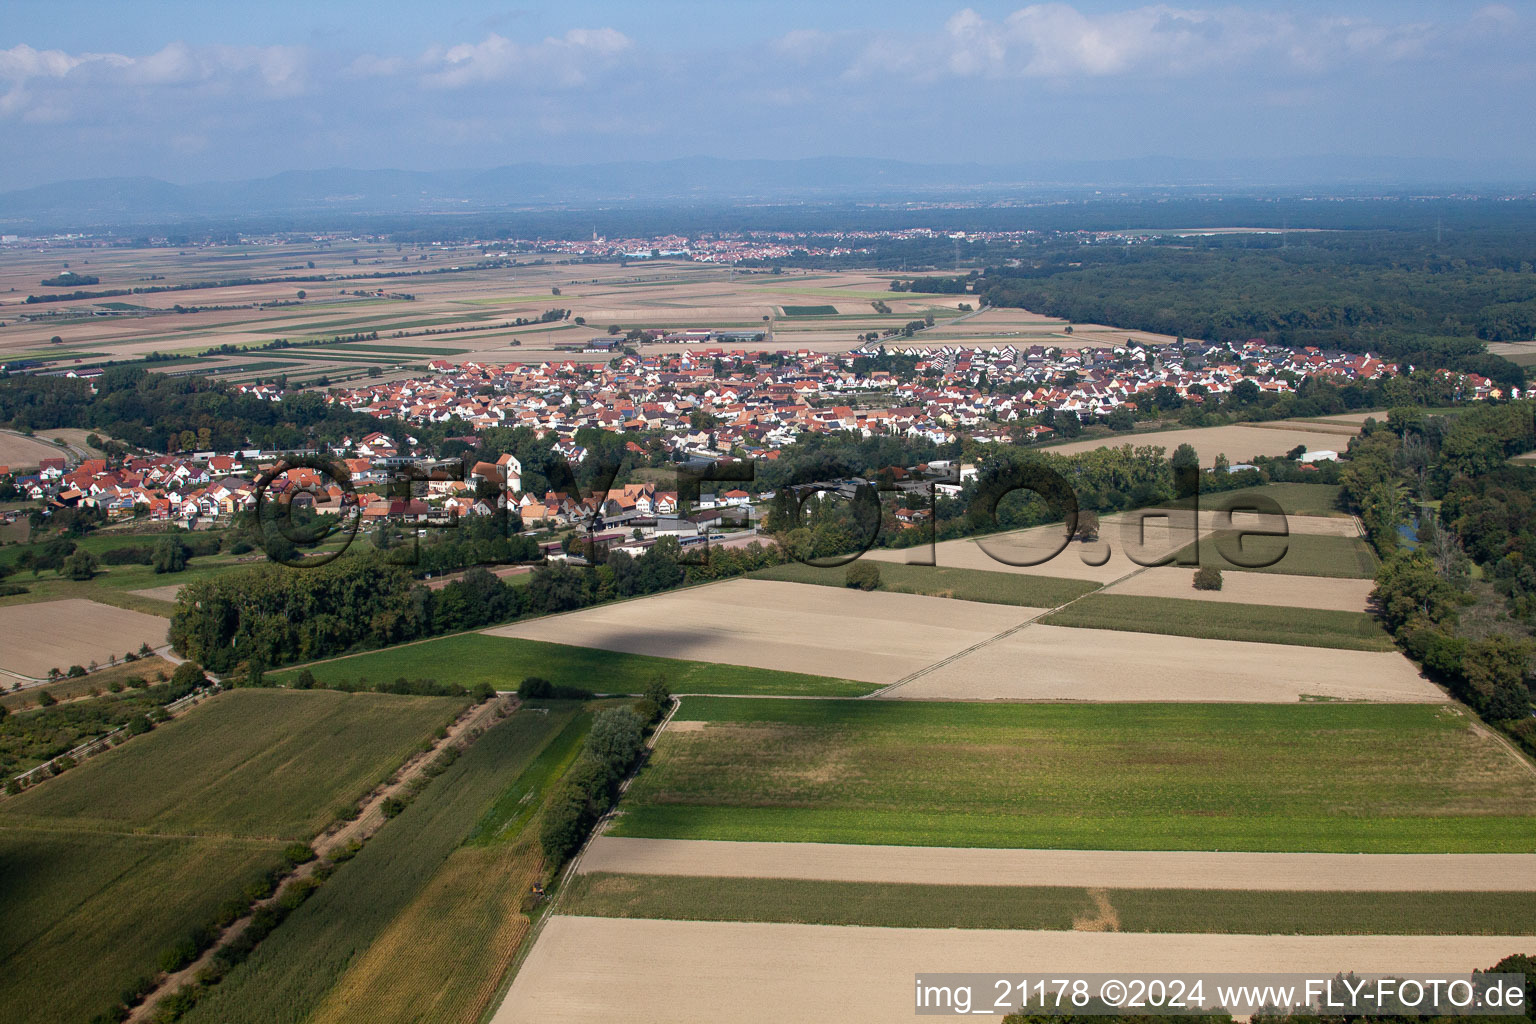 Photographie aérienne de Champs agricoles et surfaces utilisables à Hördt dans le département Rhénanie-Palatinat, Allemagne